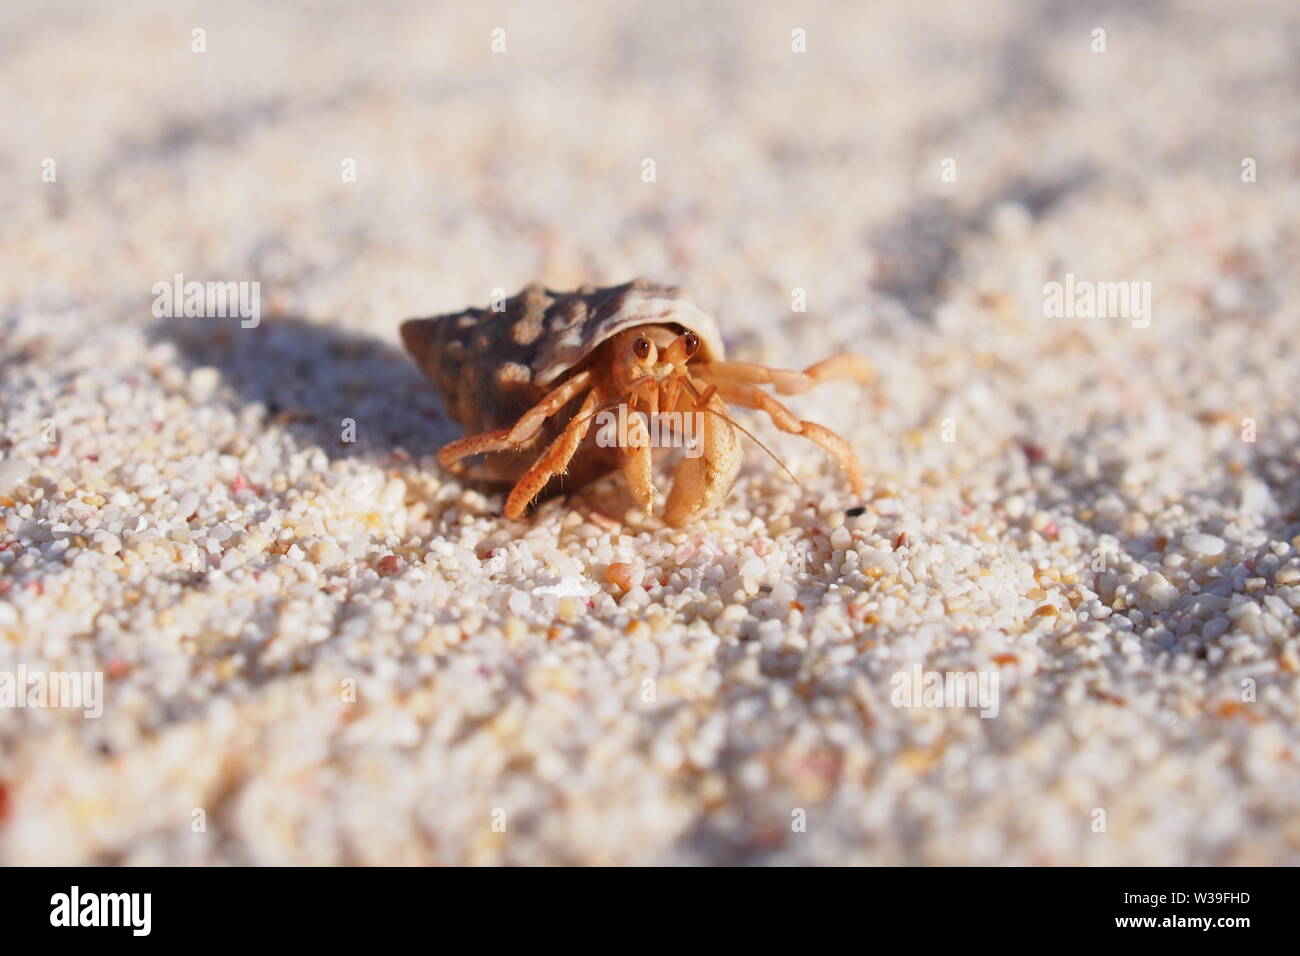 Cangrejo ermitaño en una playa de arena, haciendo lindas cosas cangrejo ermitaño, Caliza Bay beach, Anguila, BWI. Foto de stock